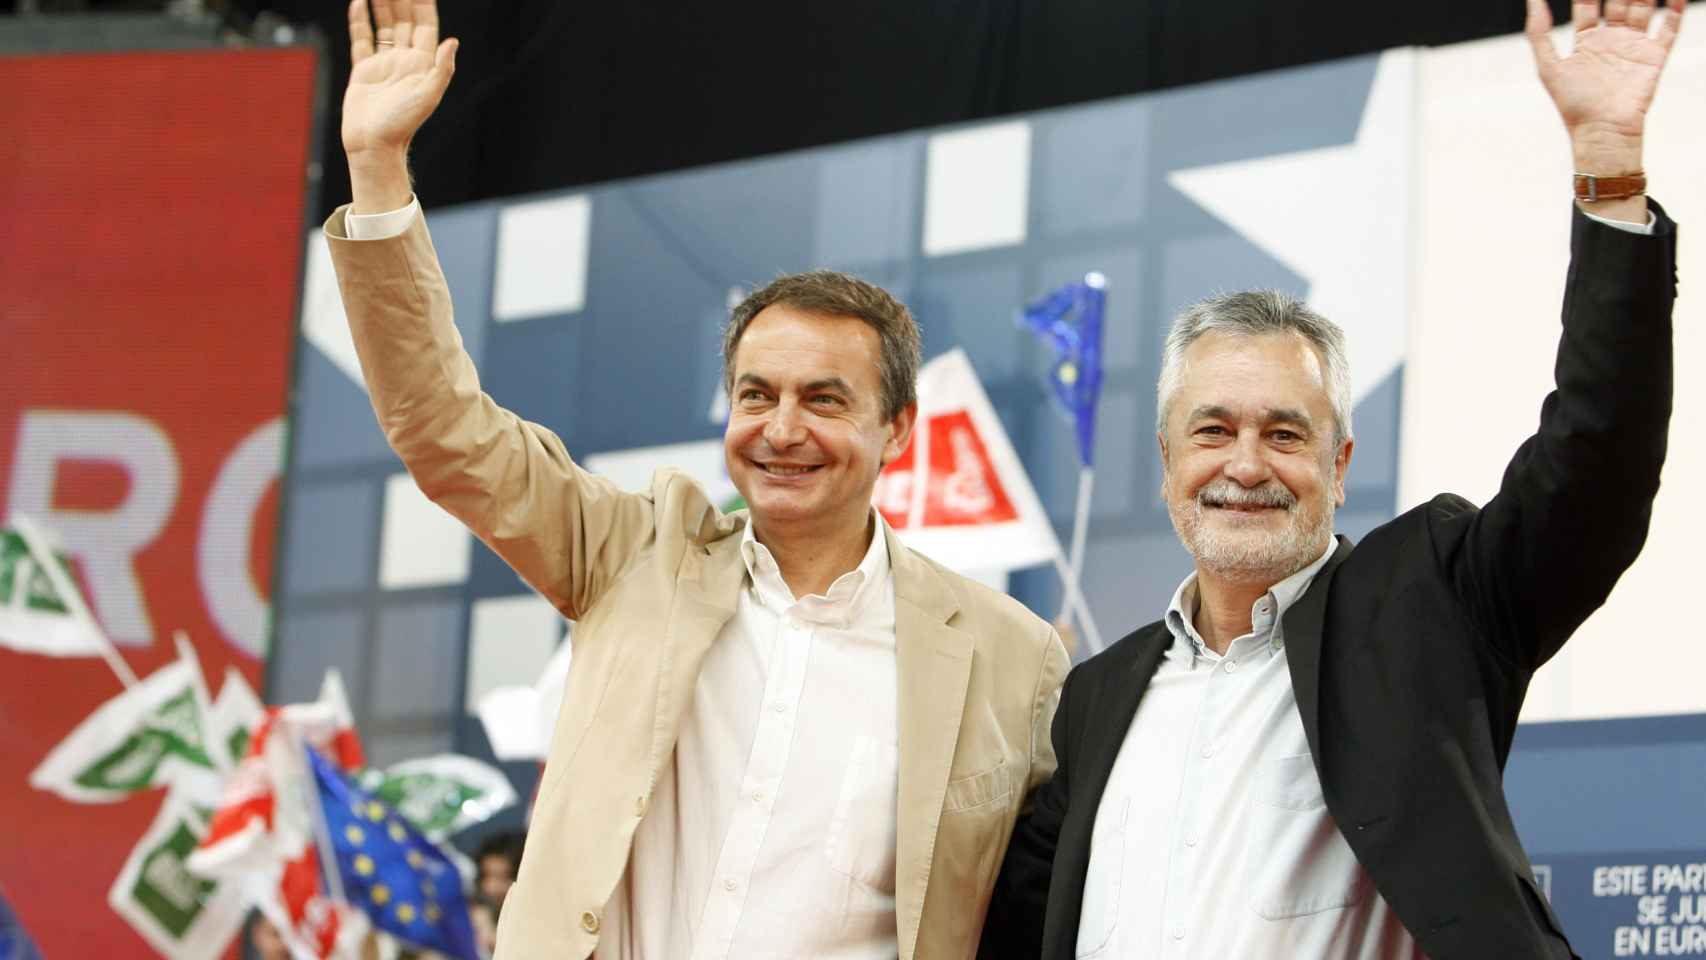 José Luis Rodríguez Zapatero y José Antonio Griñán en un mitin en Dos Hermanas (Sevilla) en 2009.